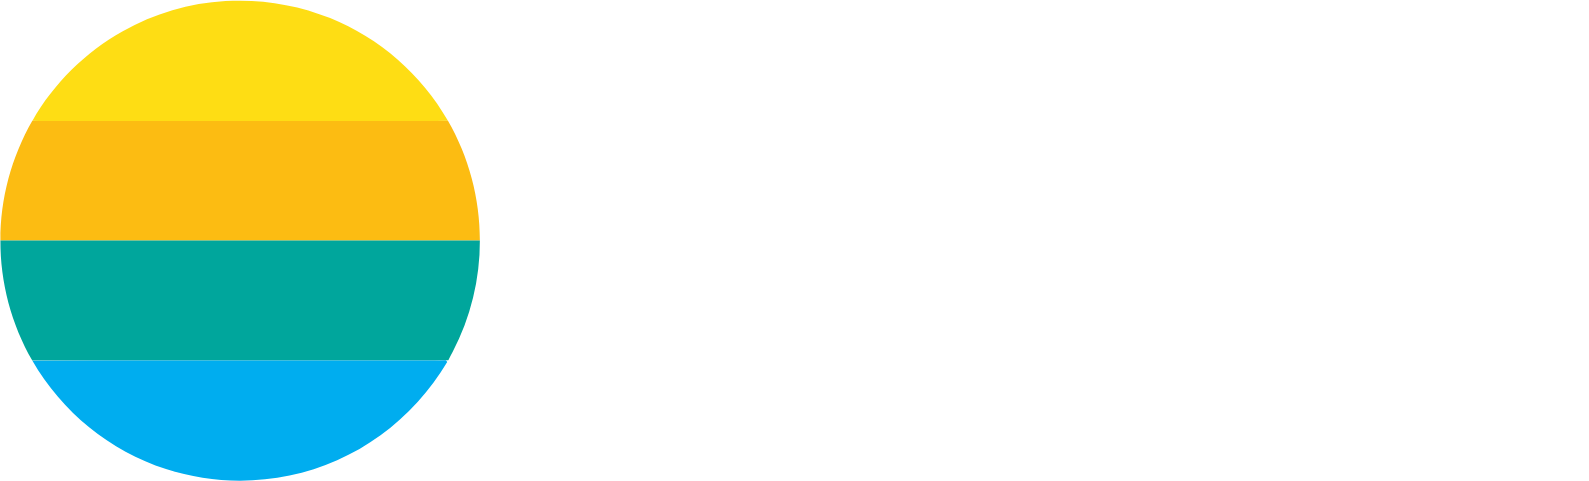 Sonoma Pharmaceuticals Logo groß für dunkle Hintergründe (transparentes PNG)